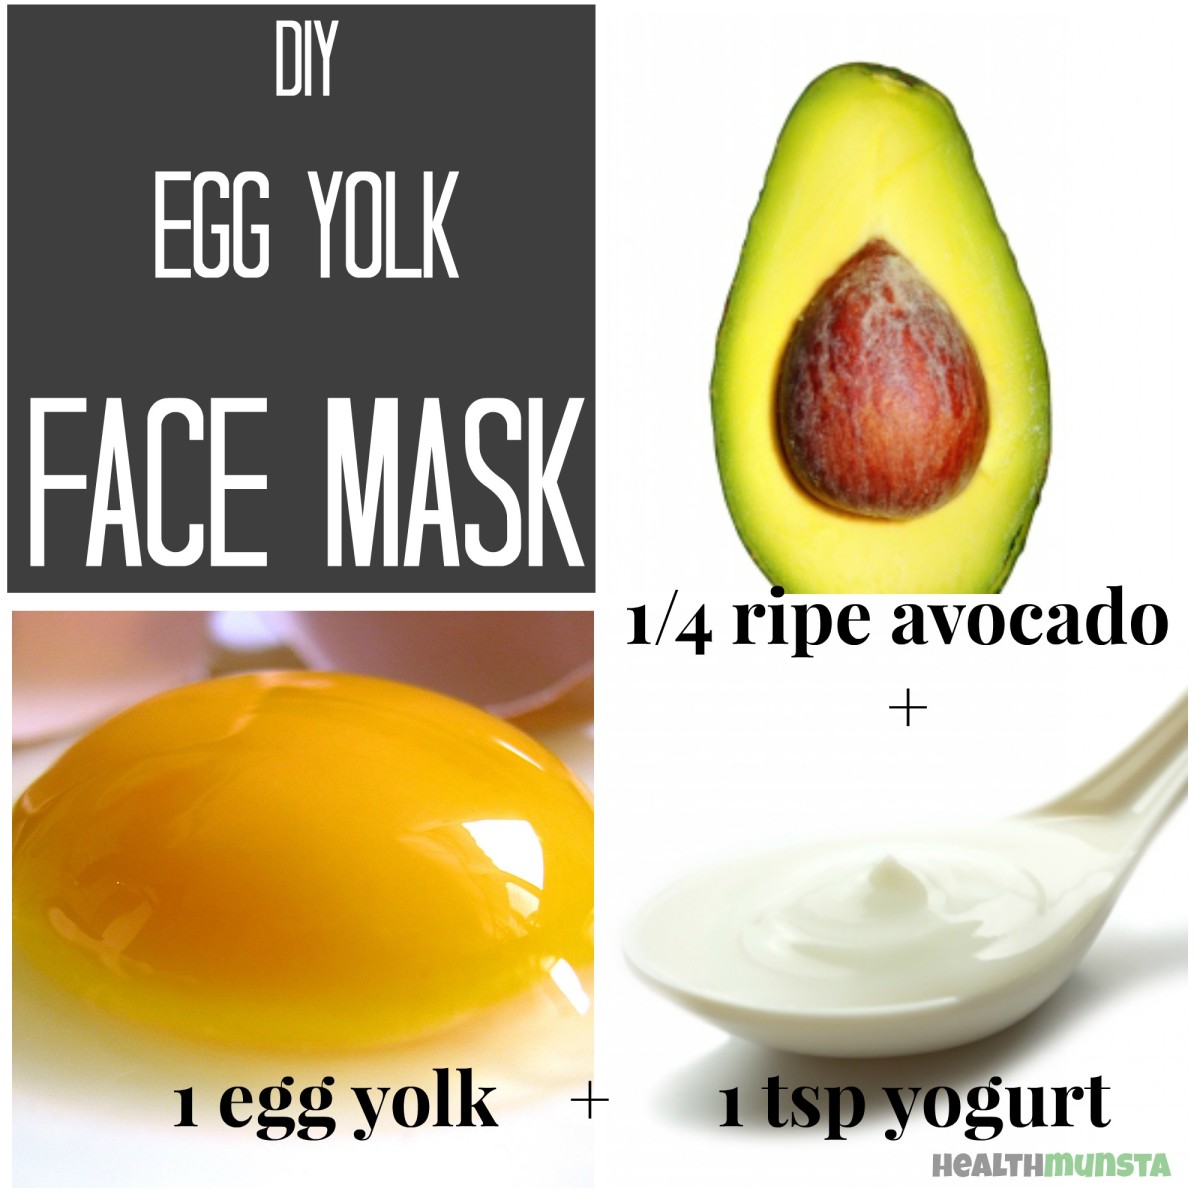 Egg yolk face mask for dry skin